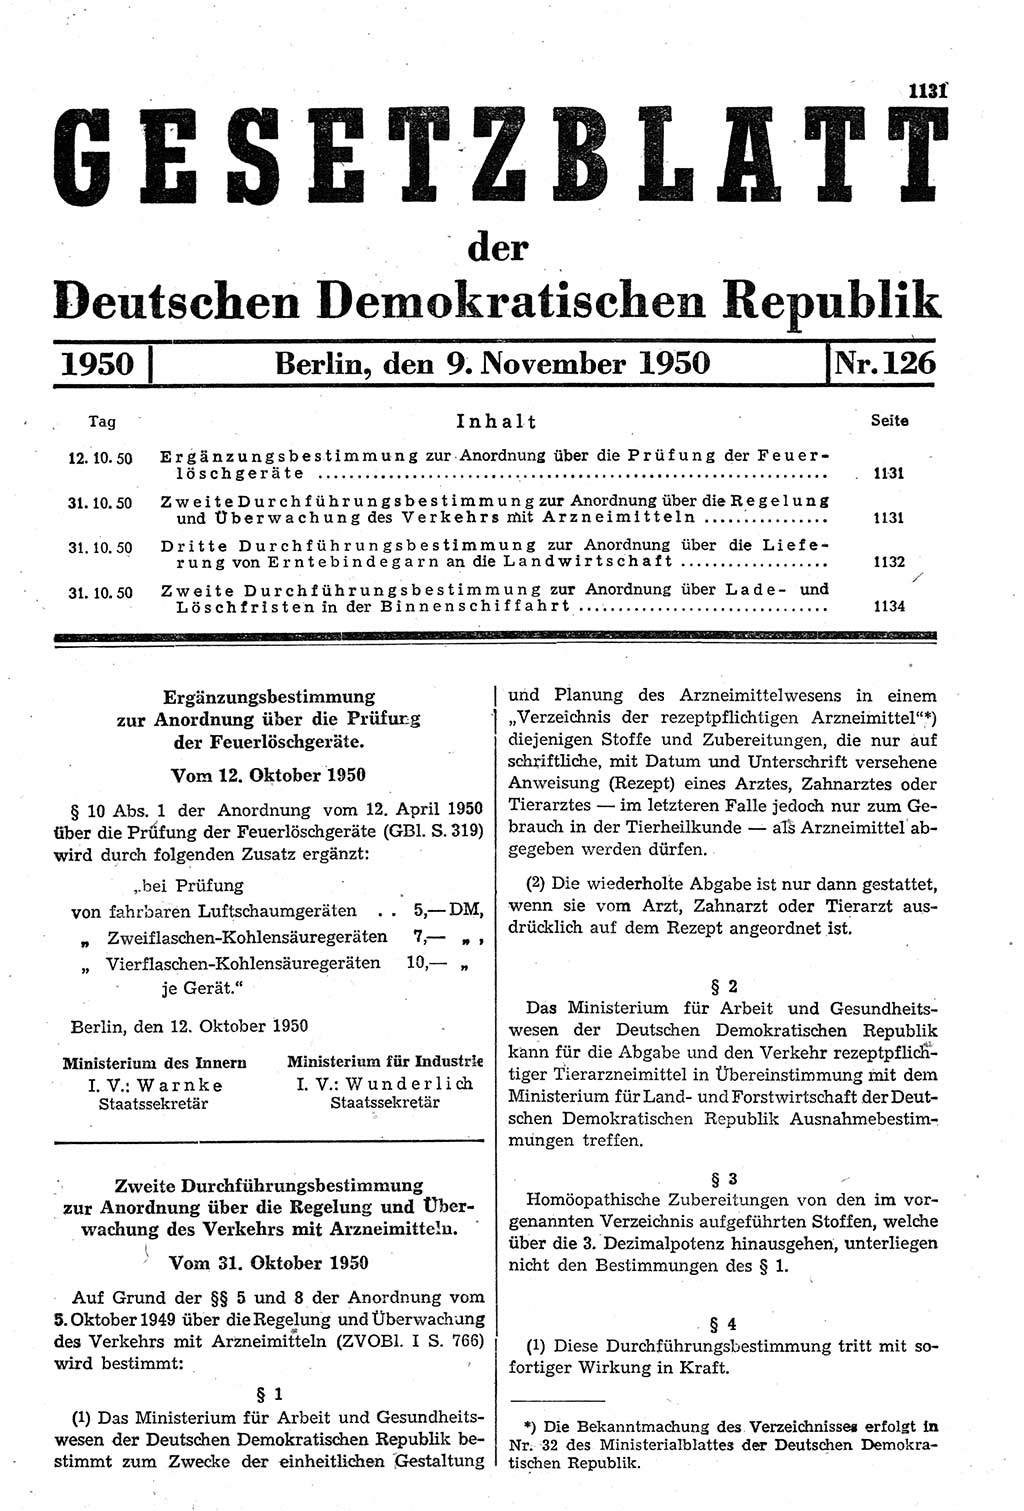 Gesetzblatt (GBl.) der Deutschen Demokratischen Republik (DDR) 1950, Seite 1131 (GBl. DDR 1950, S. 1131)